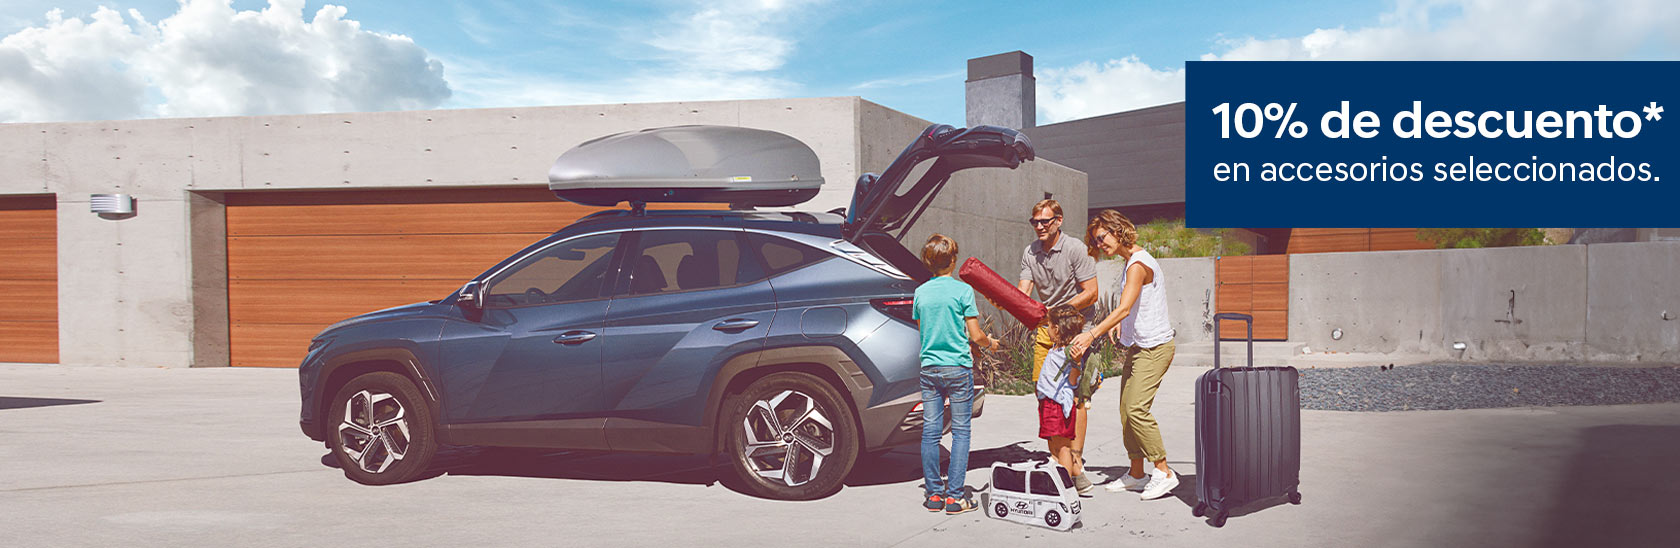 Familia bajando maletas de SUV Hyundai